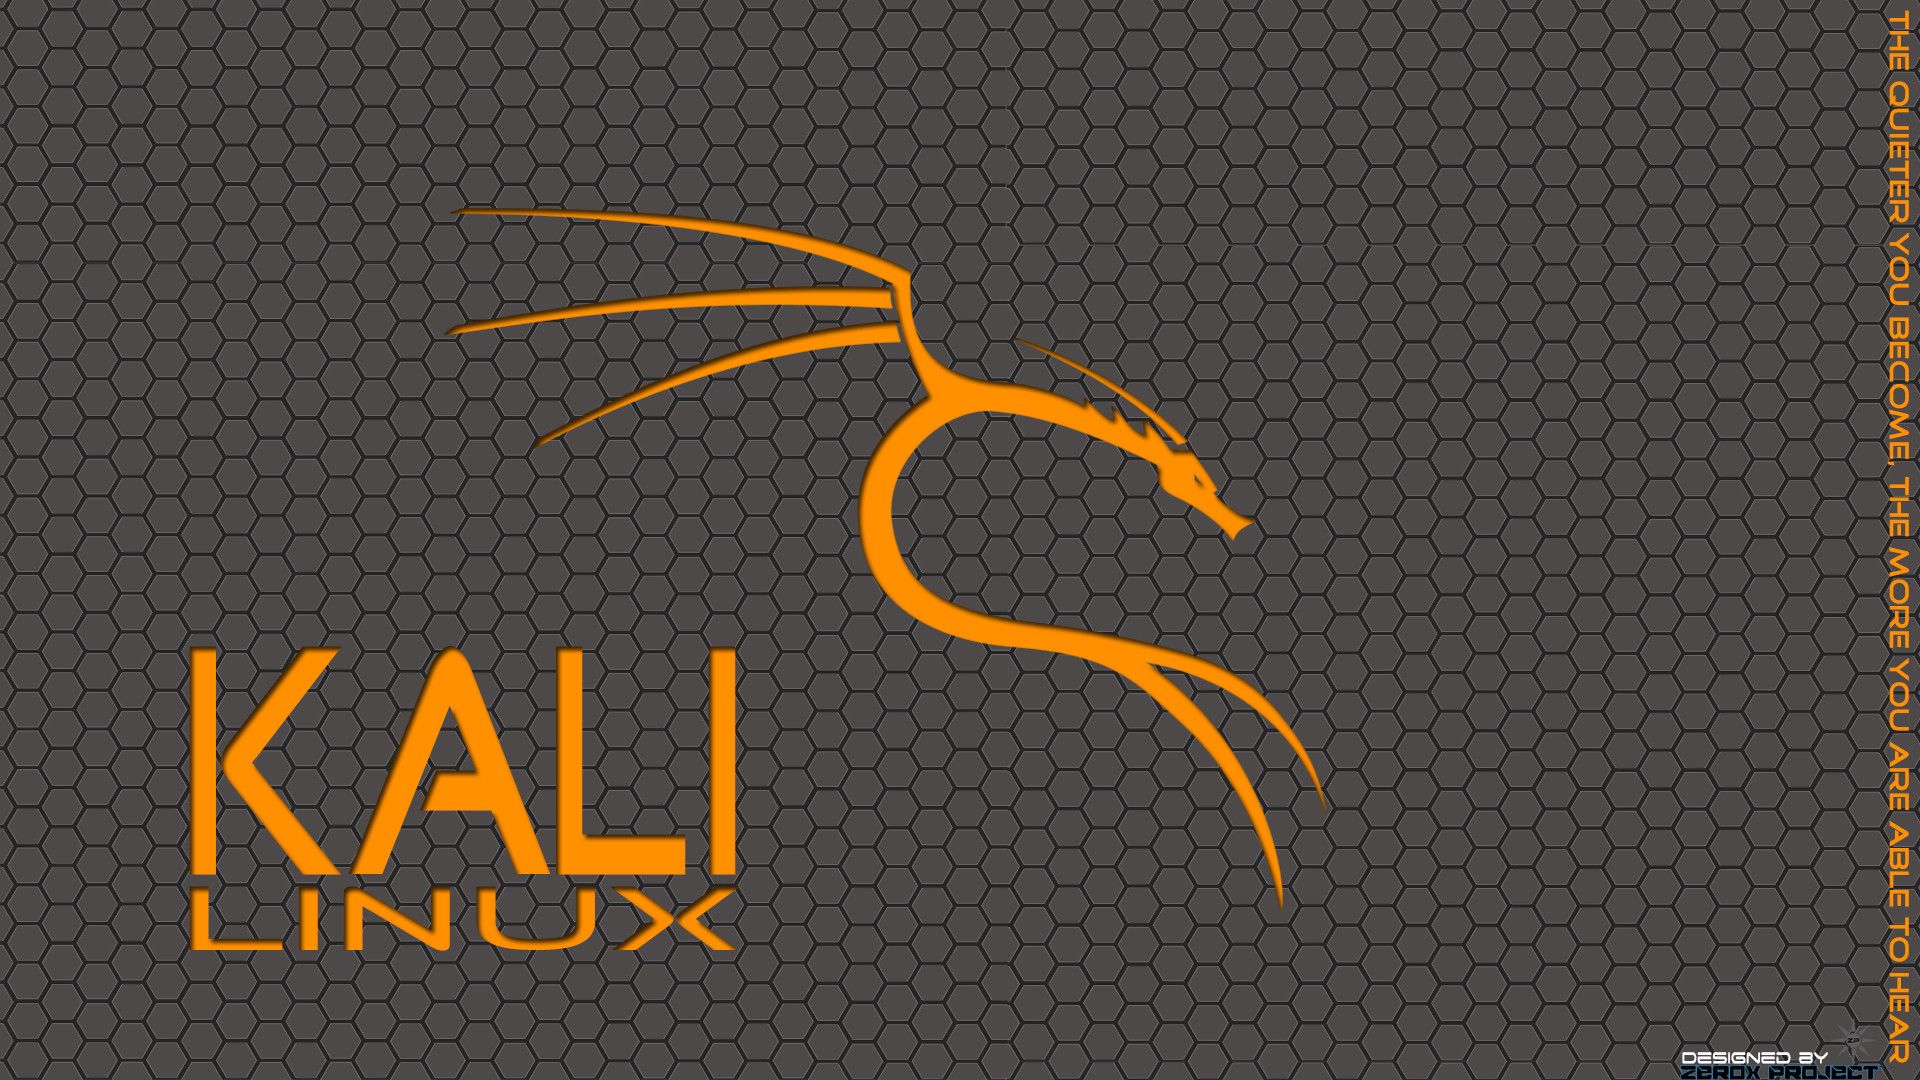 Ubuntu Desktop Background For Kali Linux